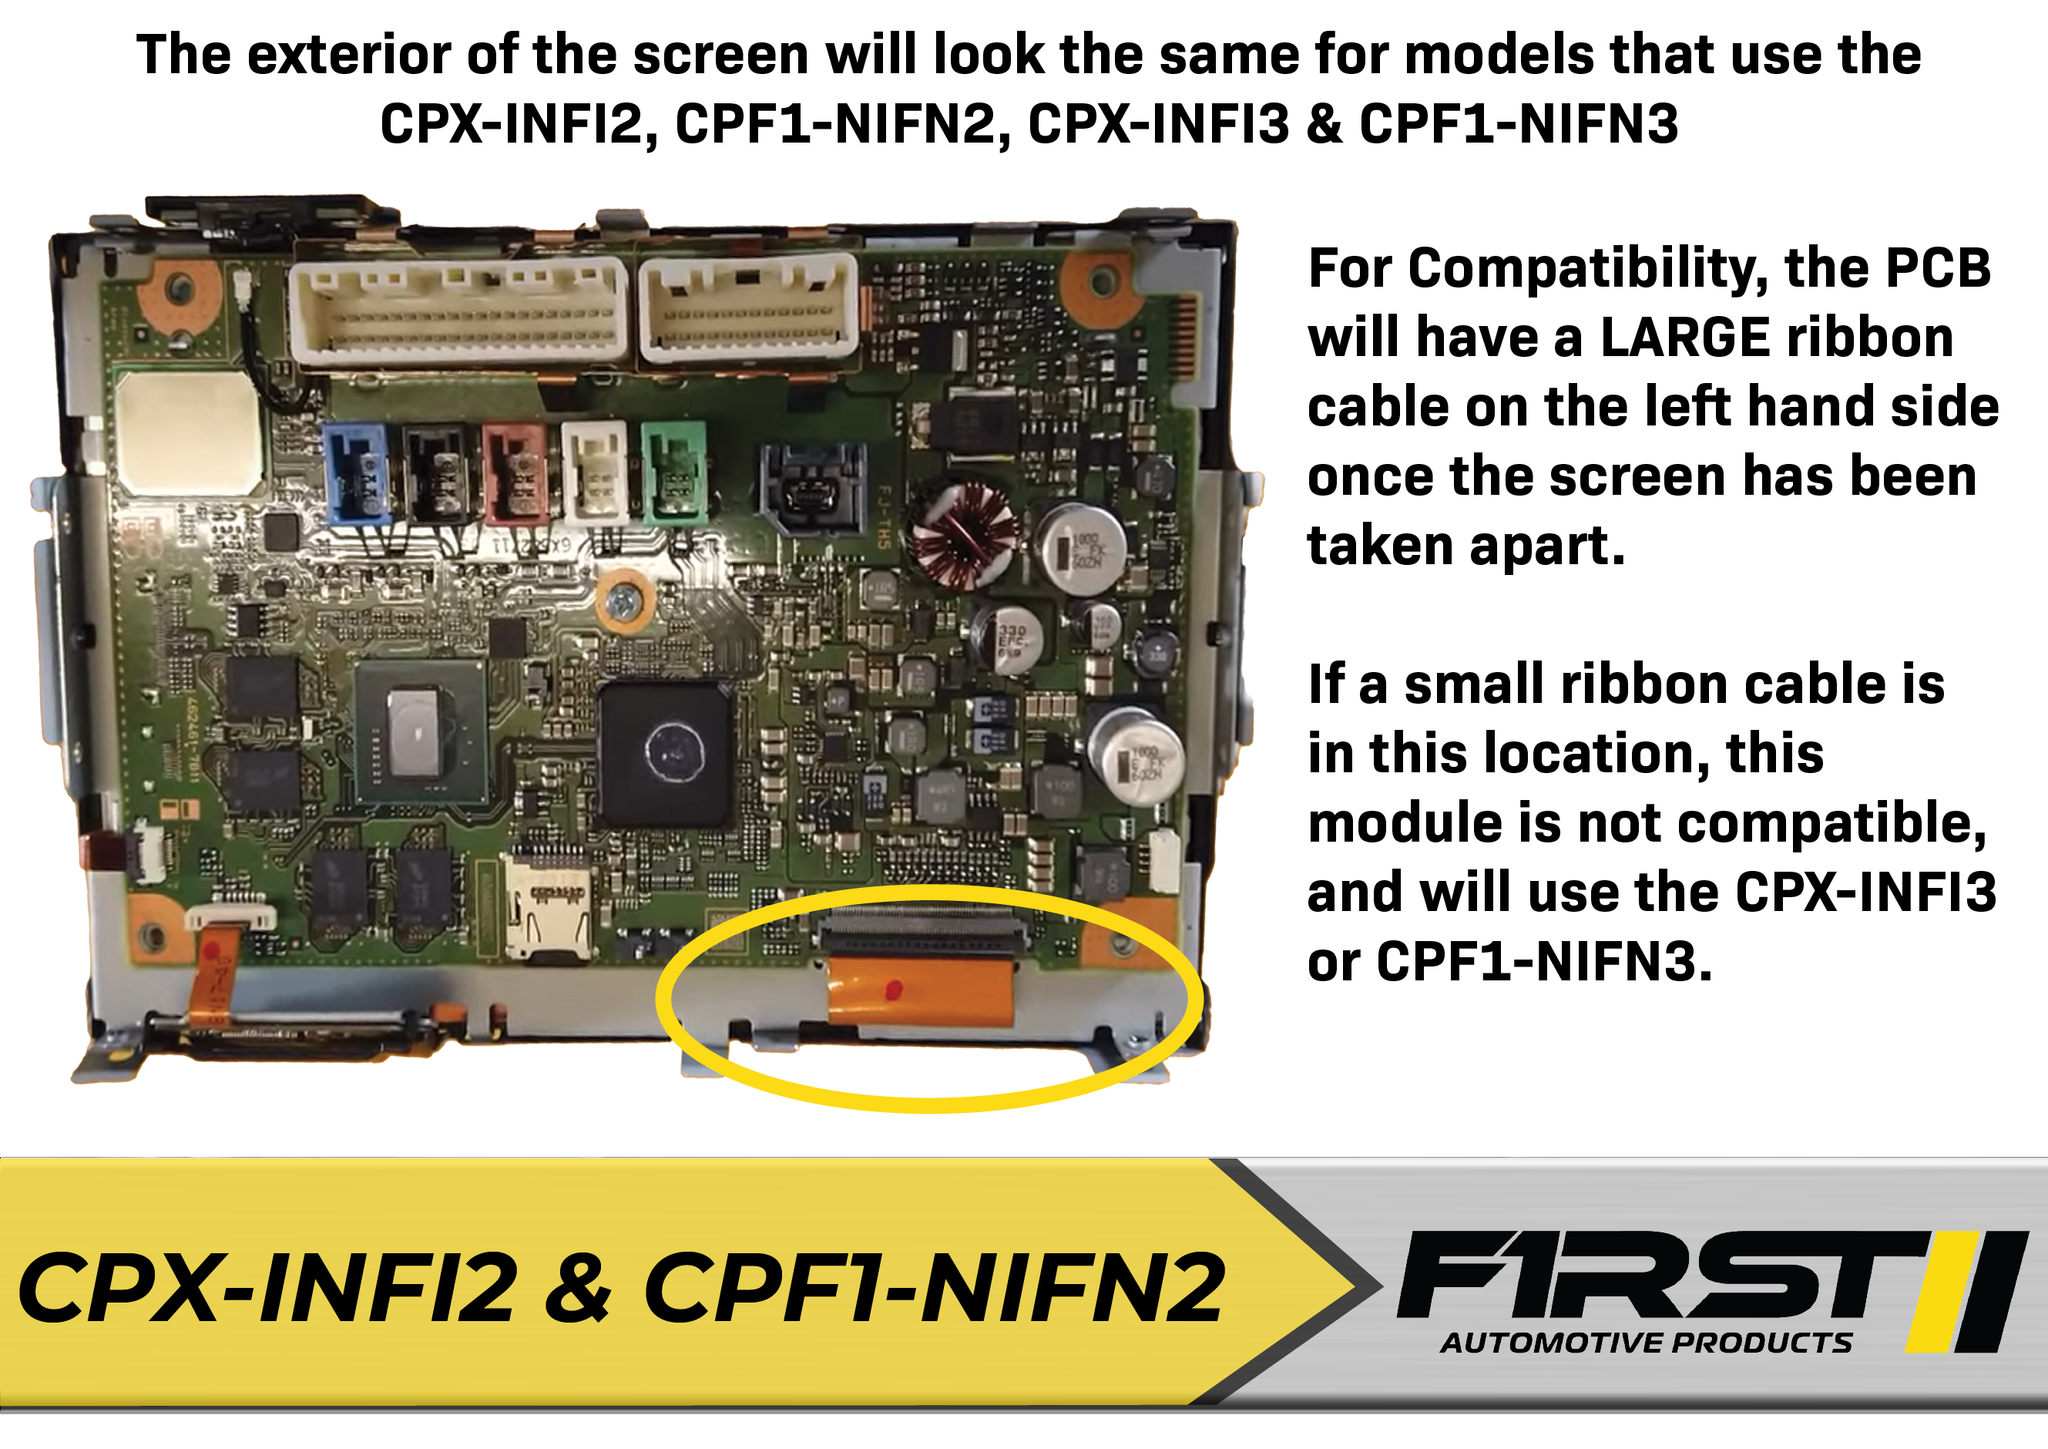 CPF1-NIFN2